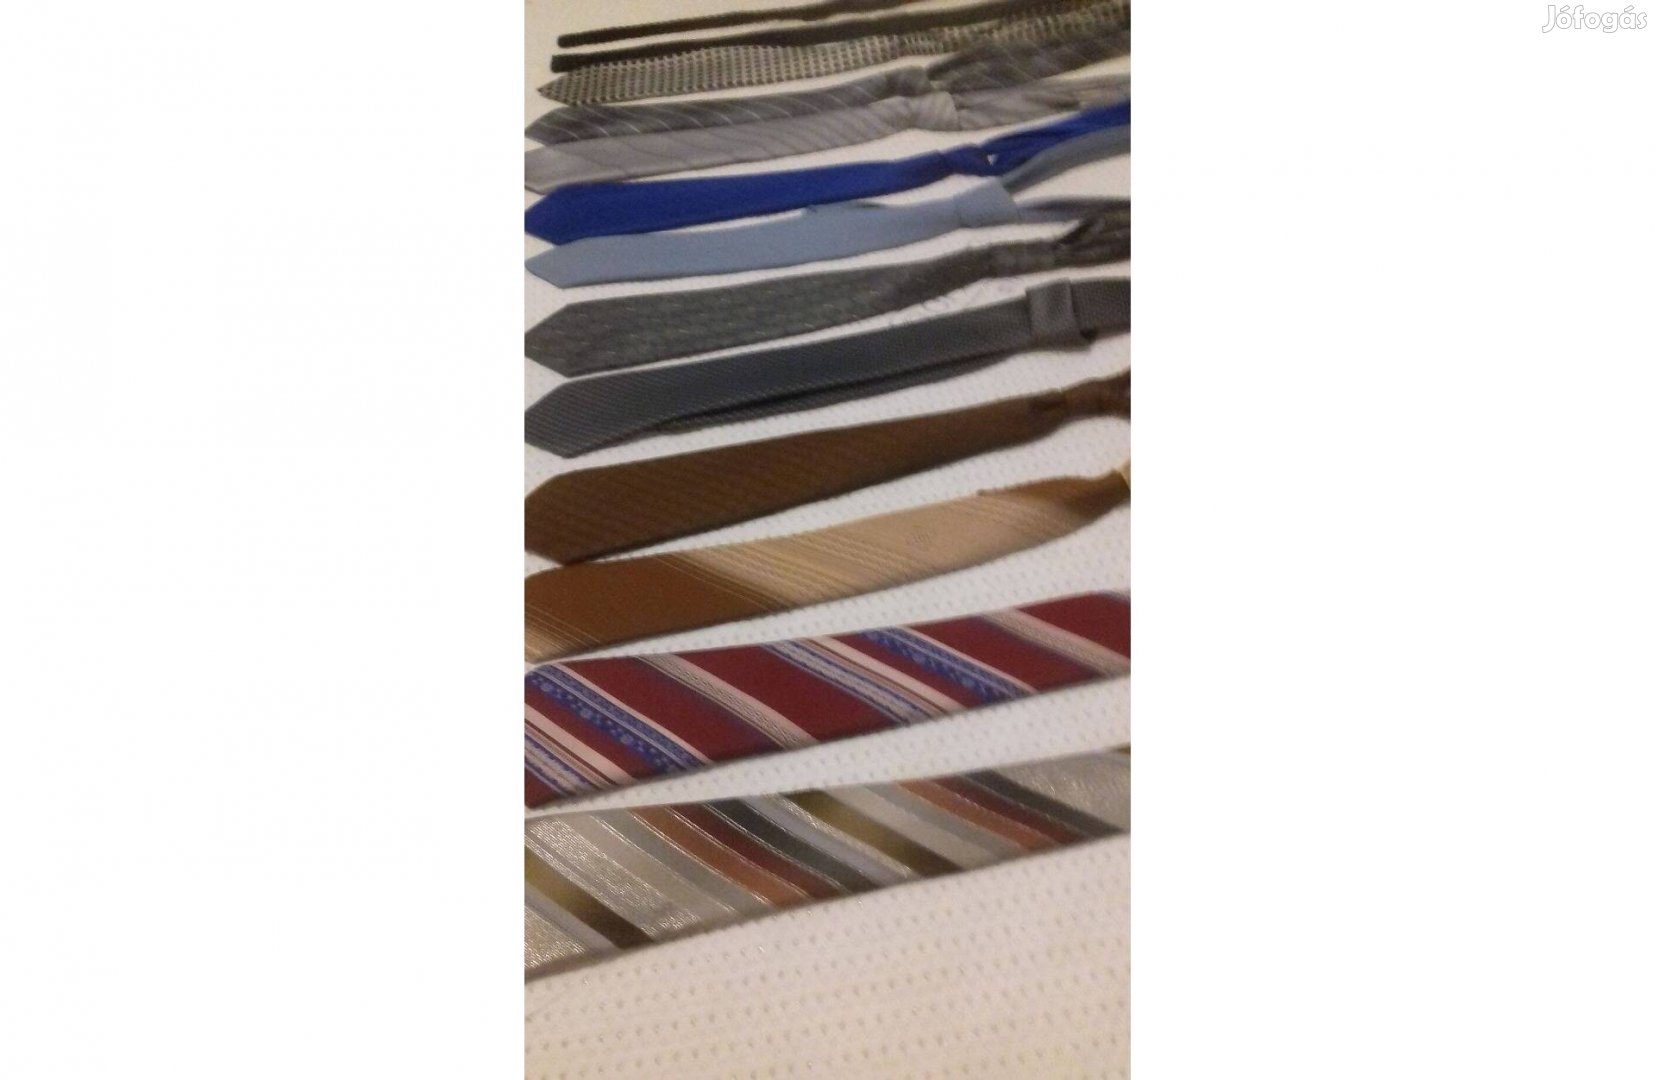 15 db nyakkendő alacsony áron új tulajdonosra vár!